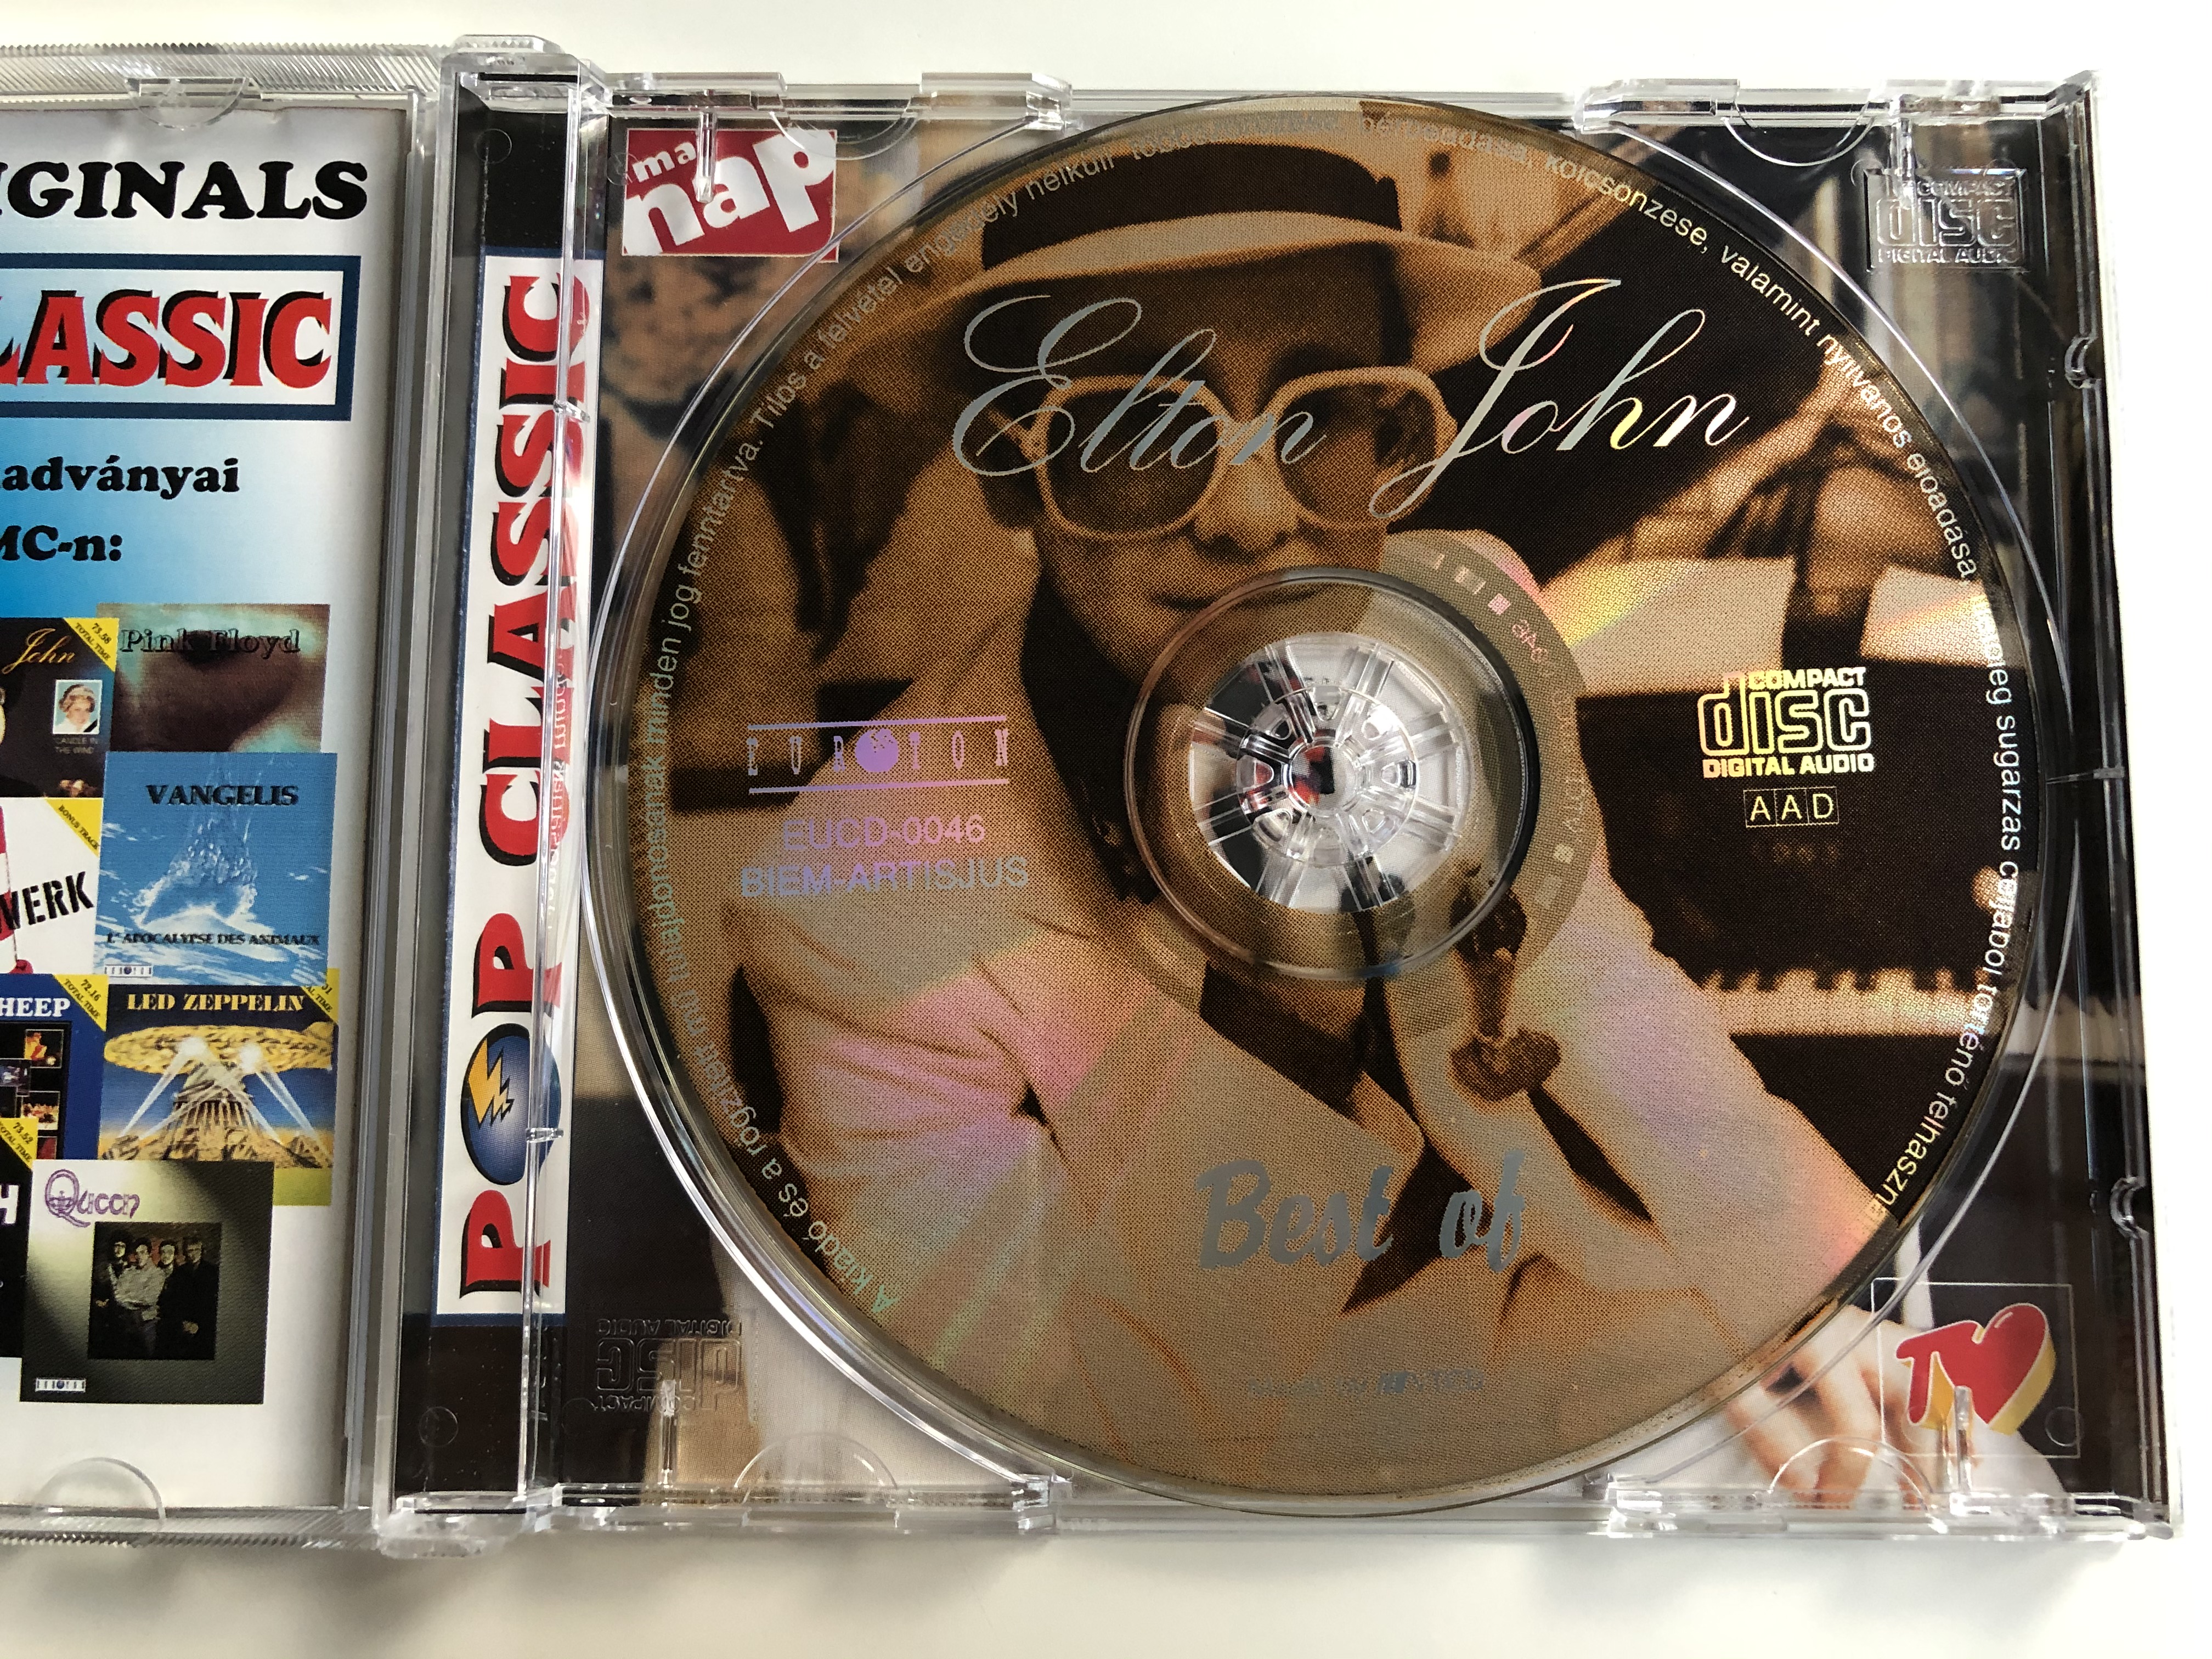 elton-john-best-of-total-time-73.58-pop-classic-euroton-audio-cd-eucd-0046-2-.jpg